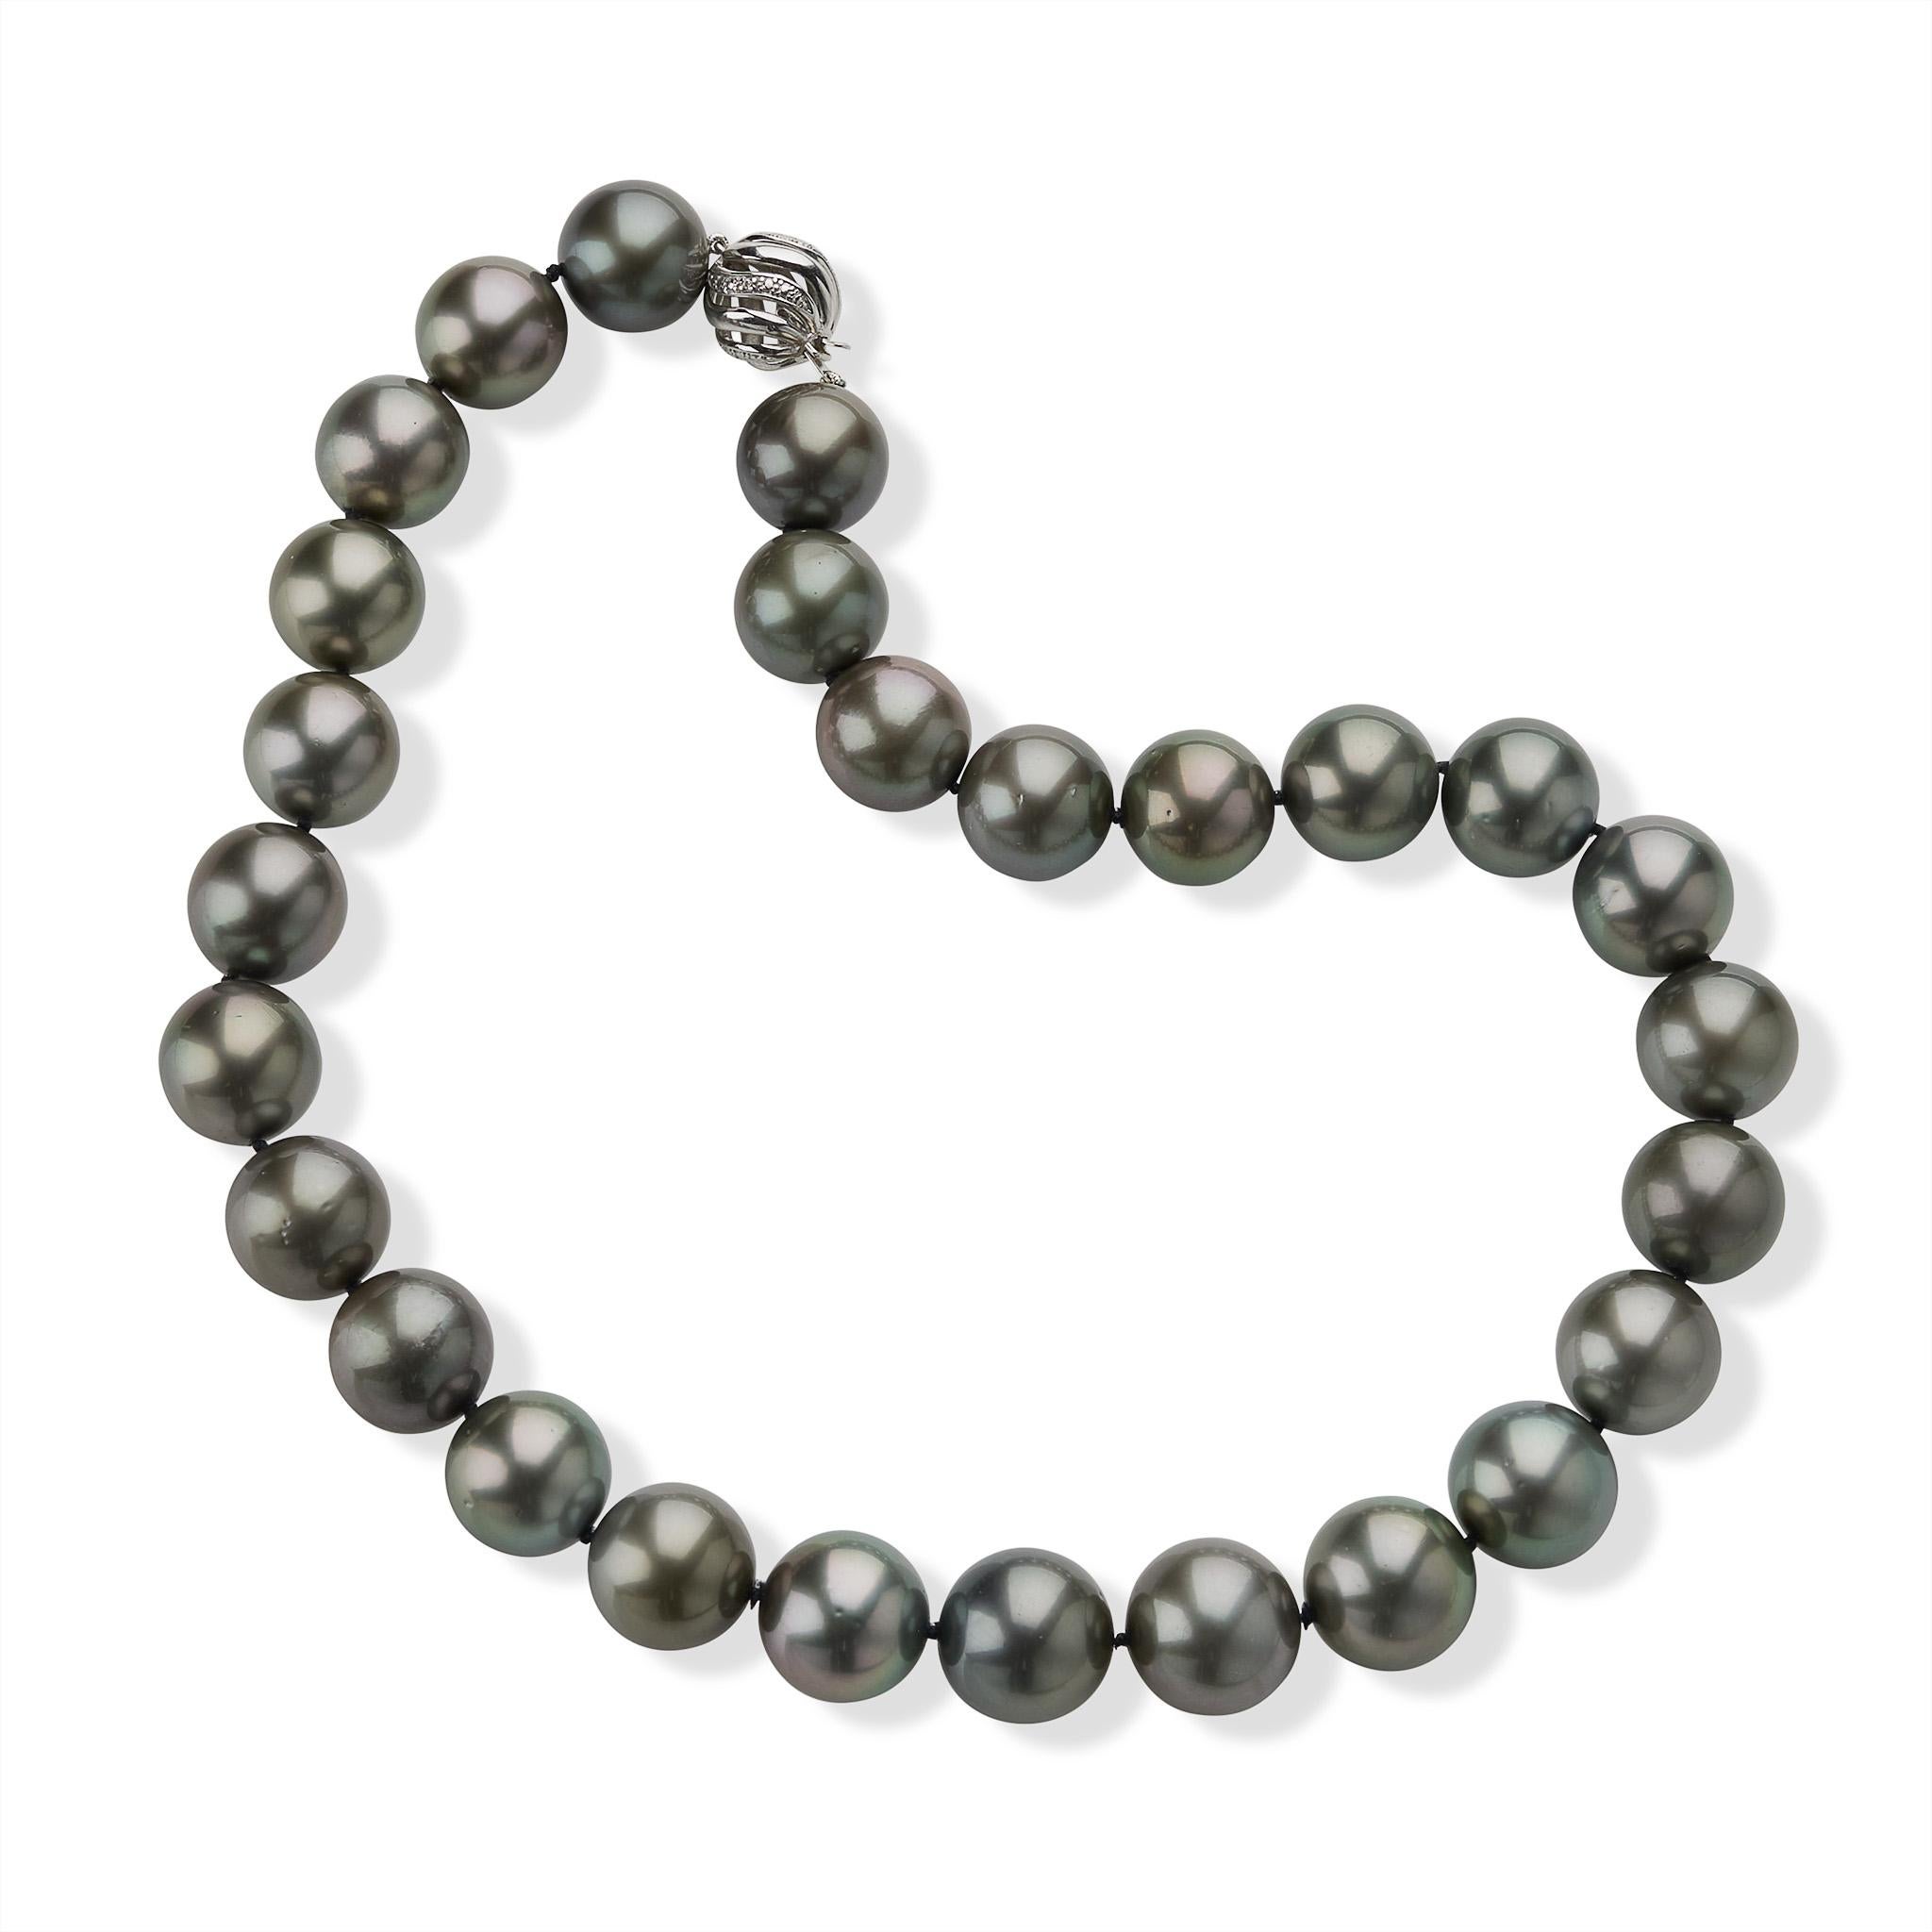 Dieses moderne Collier besteht aus 27 runden Tahiti-Zuchtperlen mit den Maßen 16,70 x 15,00 mm. Die Halskette aus naturfarbenen, silberfarbenen Gun-Metal-Perlen mit dezenten Rosatönen wird durch einen Boule-Verschluss aus 14 Karat Weißgold mit